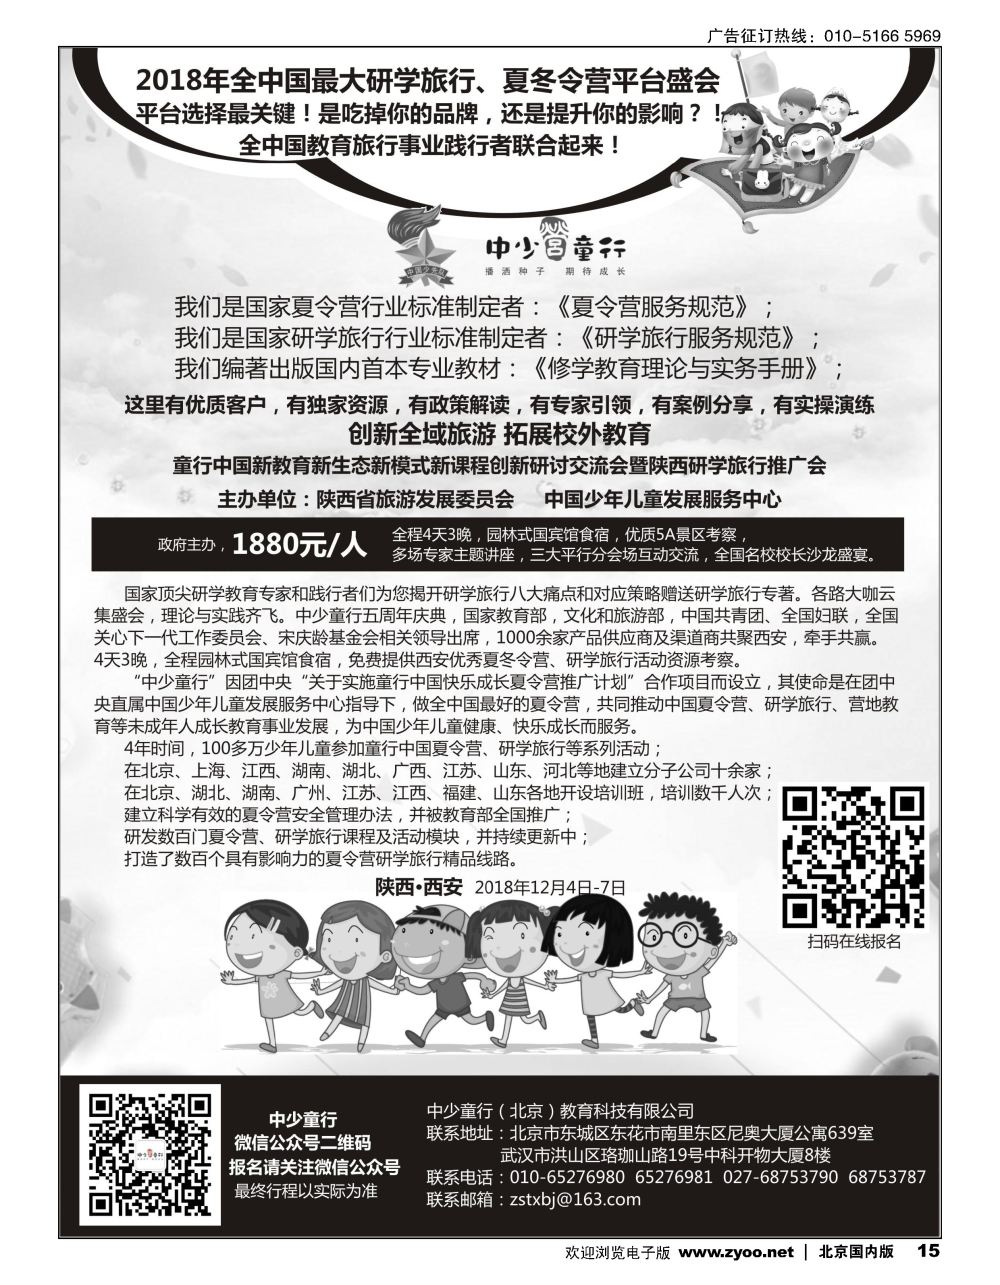 15童行中国夏令营推广计划2018年夏令营、研学旅行活动推介会 